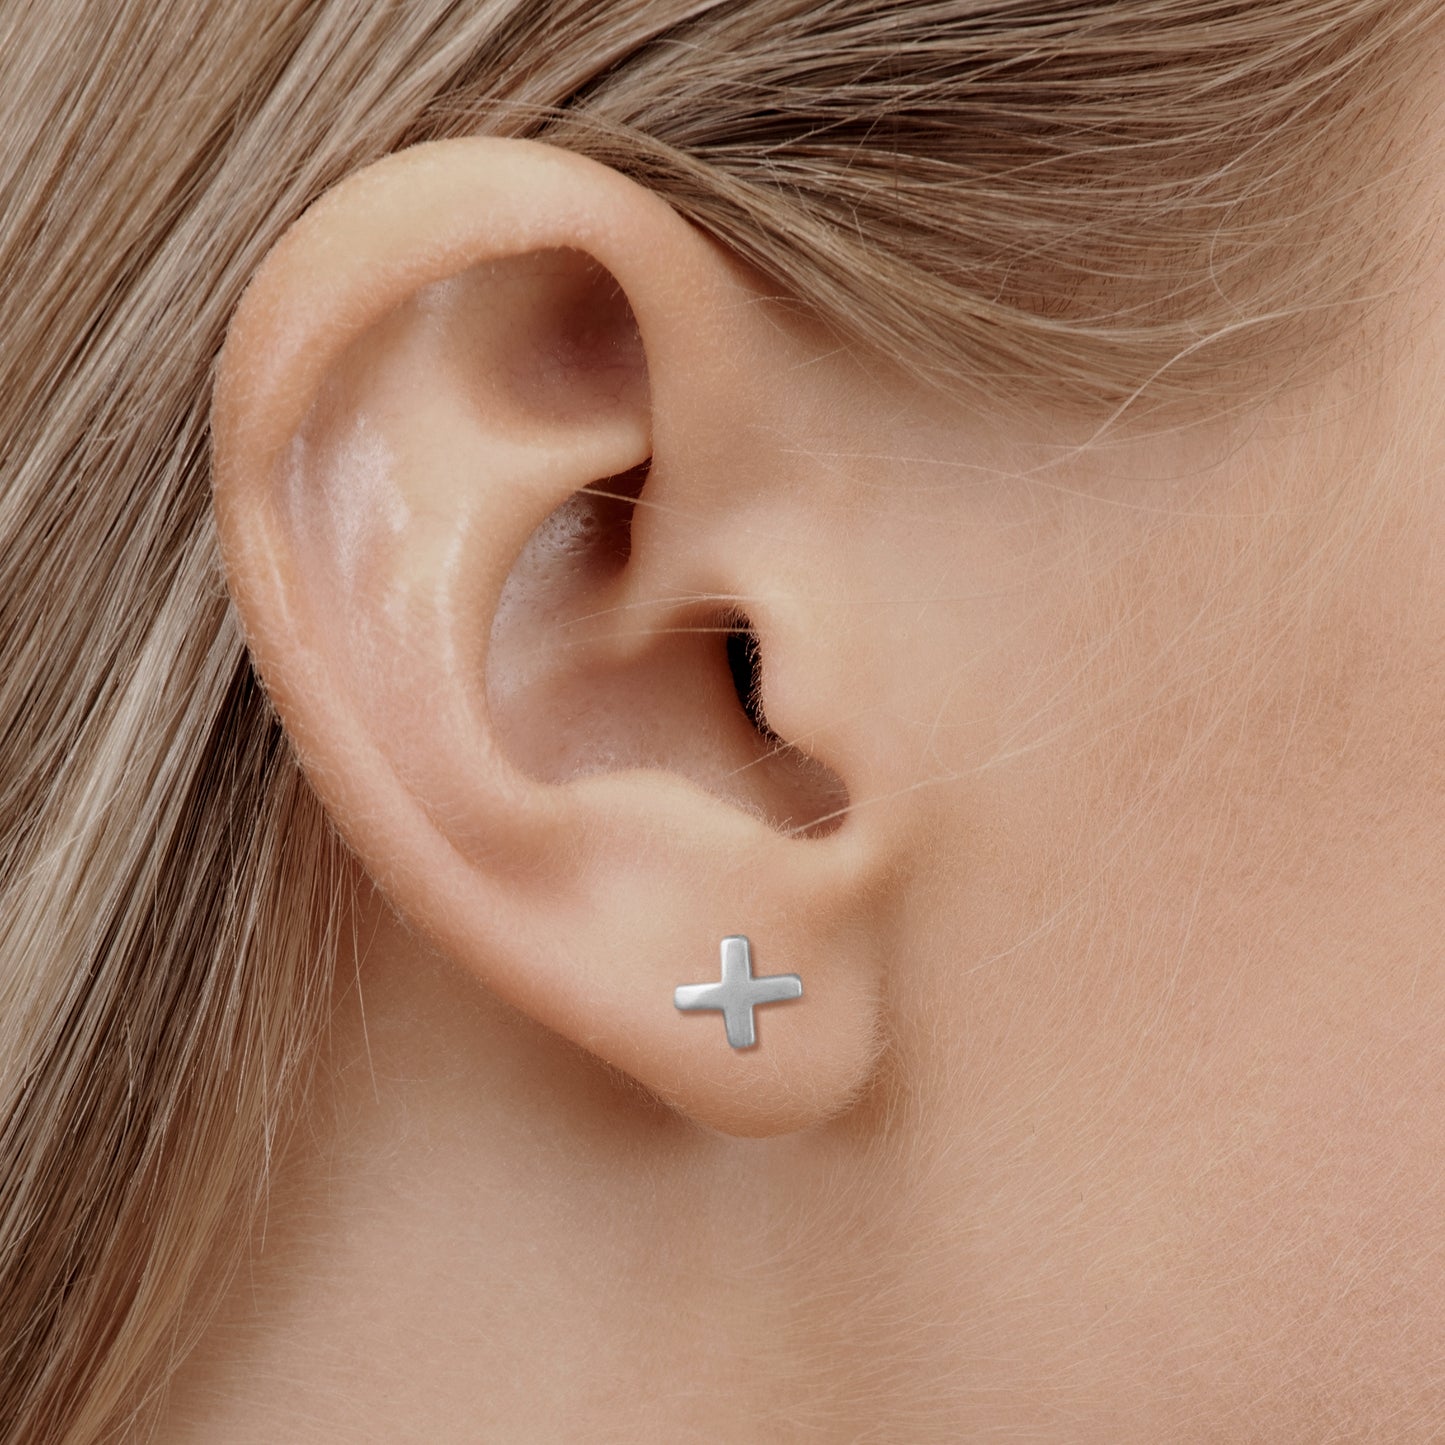 Silver cross earring in model